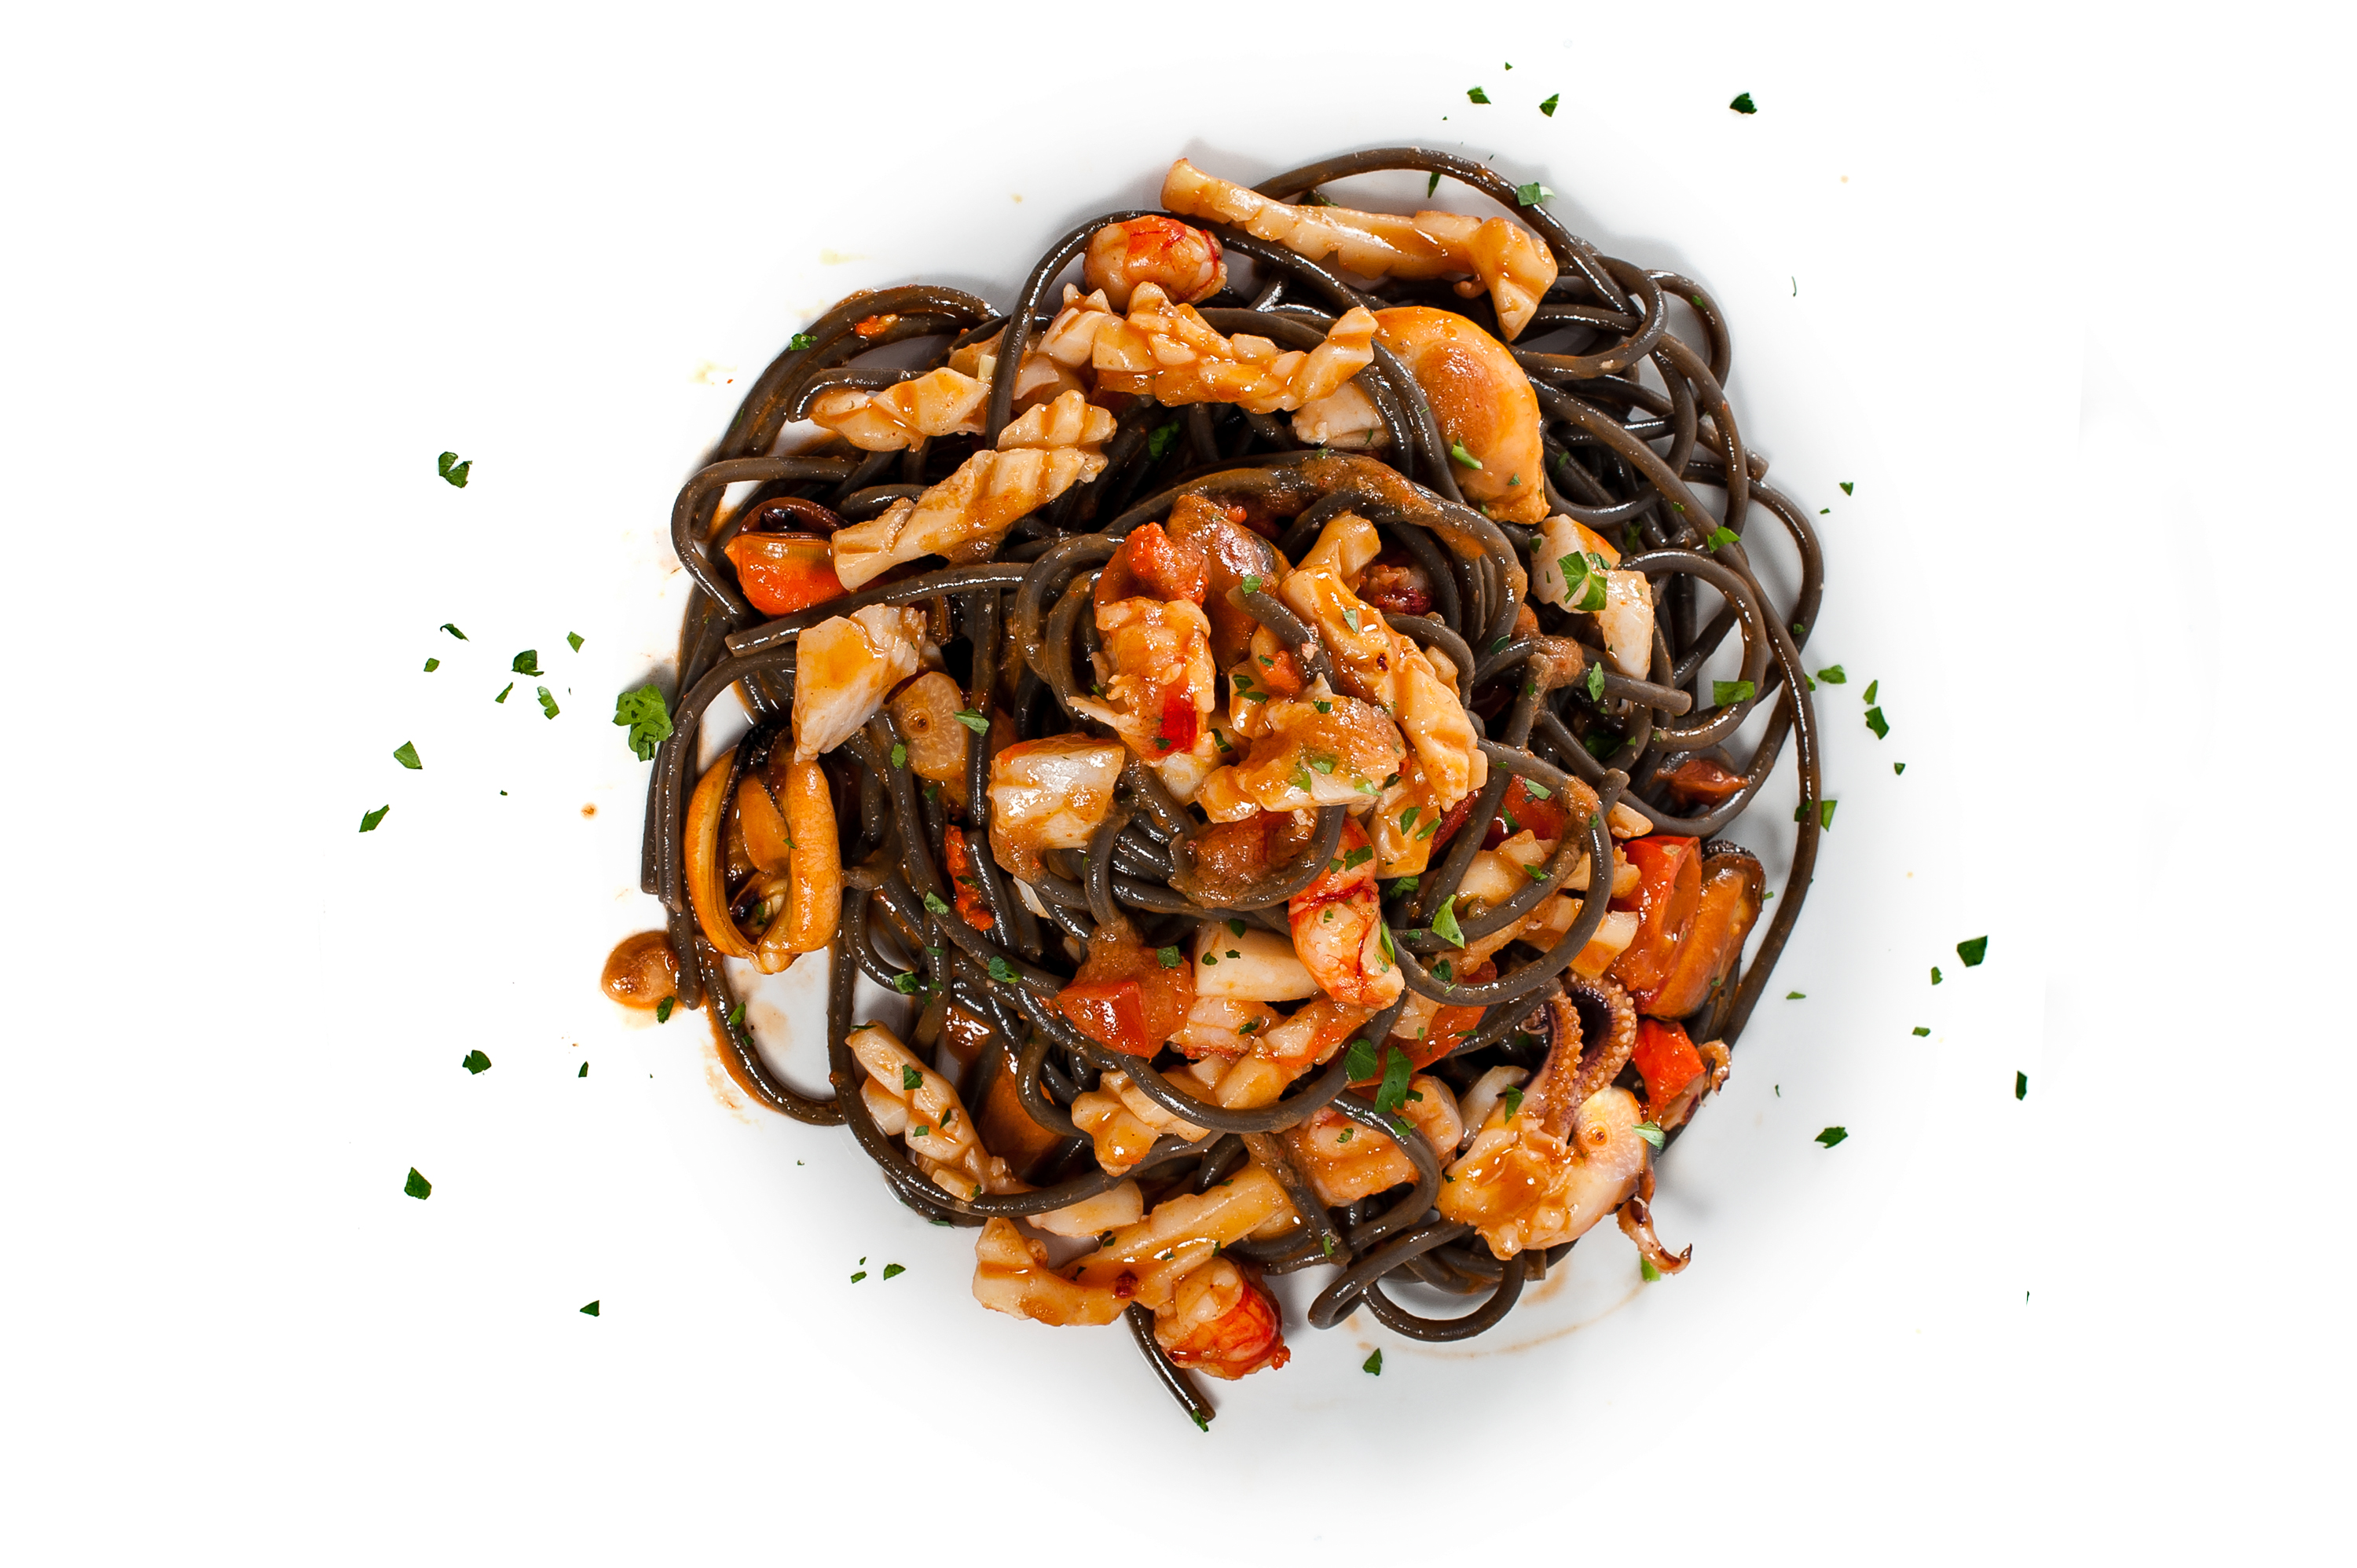 Spaghettis au noir de seiche avec petits calmars, moules, crevettes et tomates datterino confites